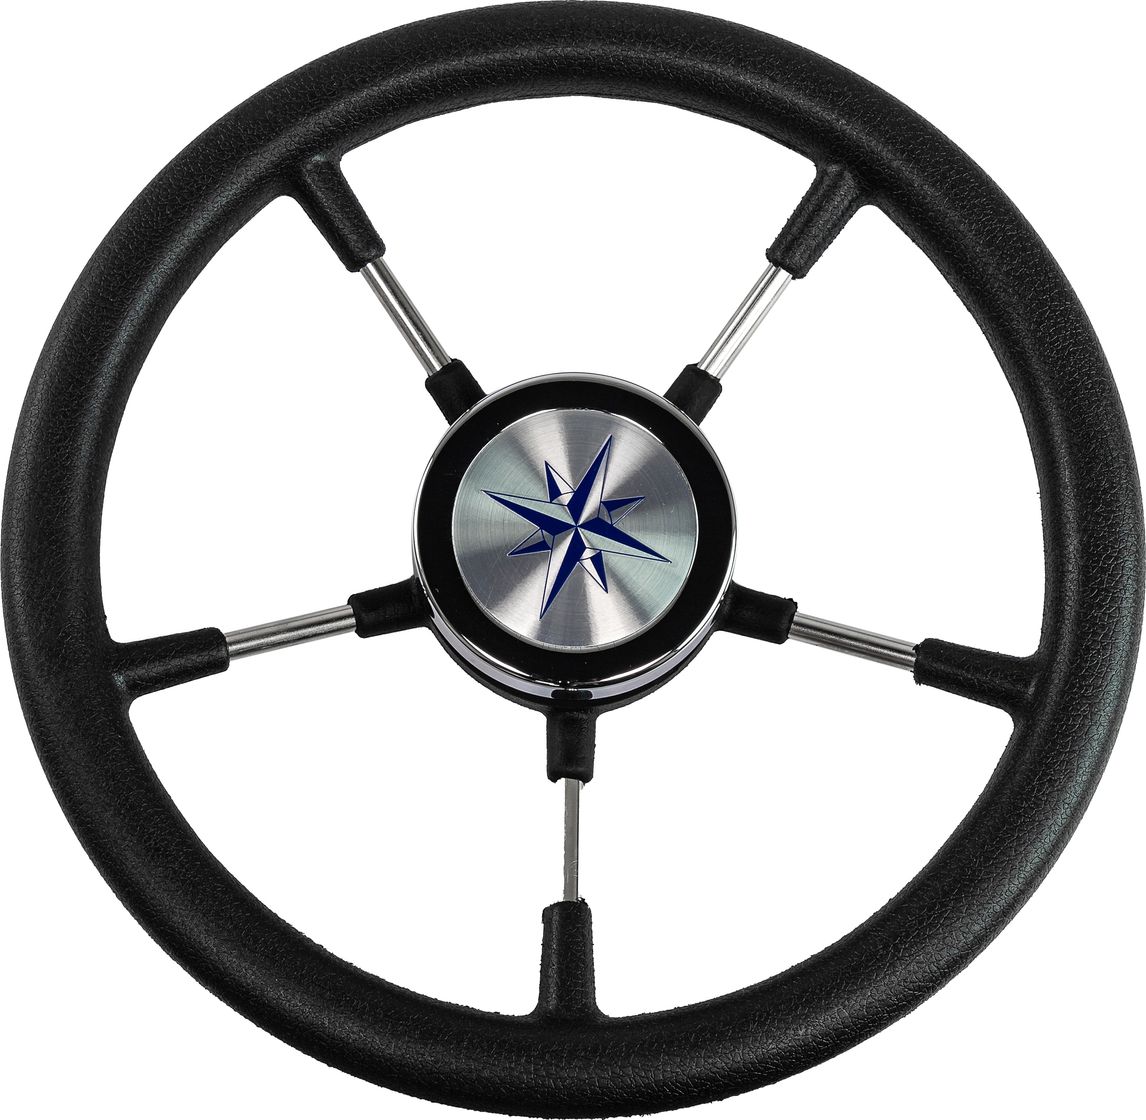 Рулевое колесо RIVA RSL обод черный, спицы серебряные д. 320 мм VN732022-01 рулевое колесо isotta daponte 350 мм 1105 5 nm